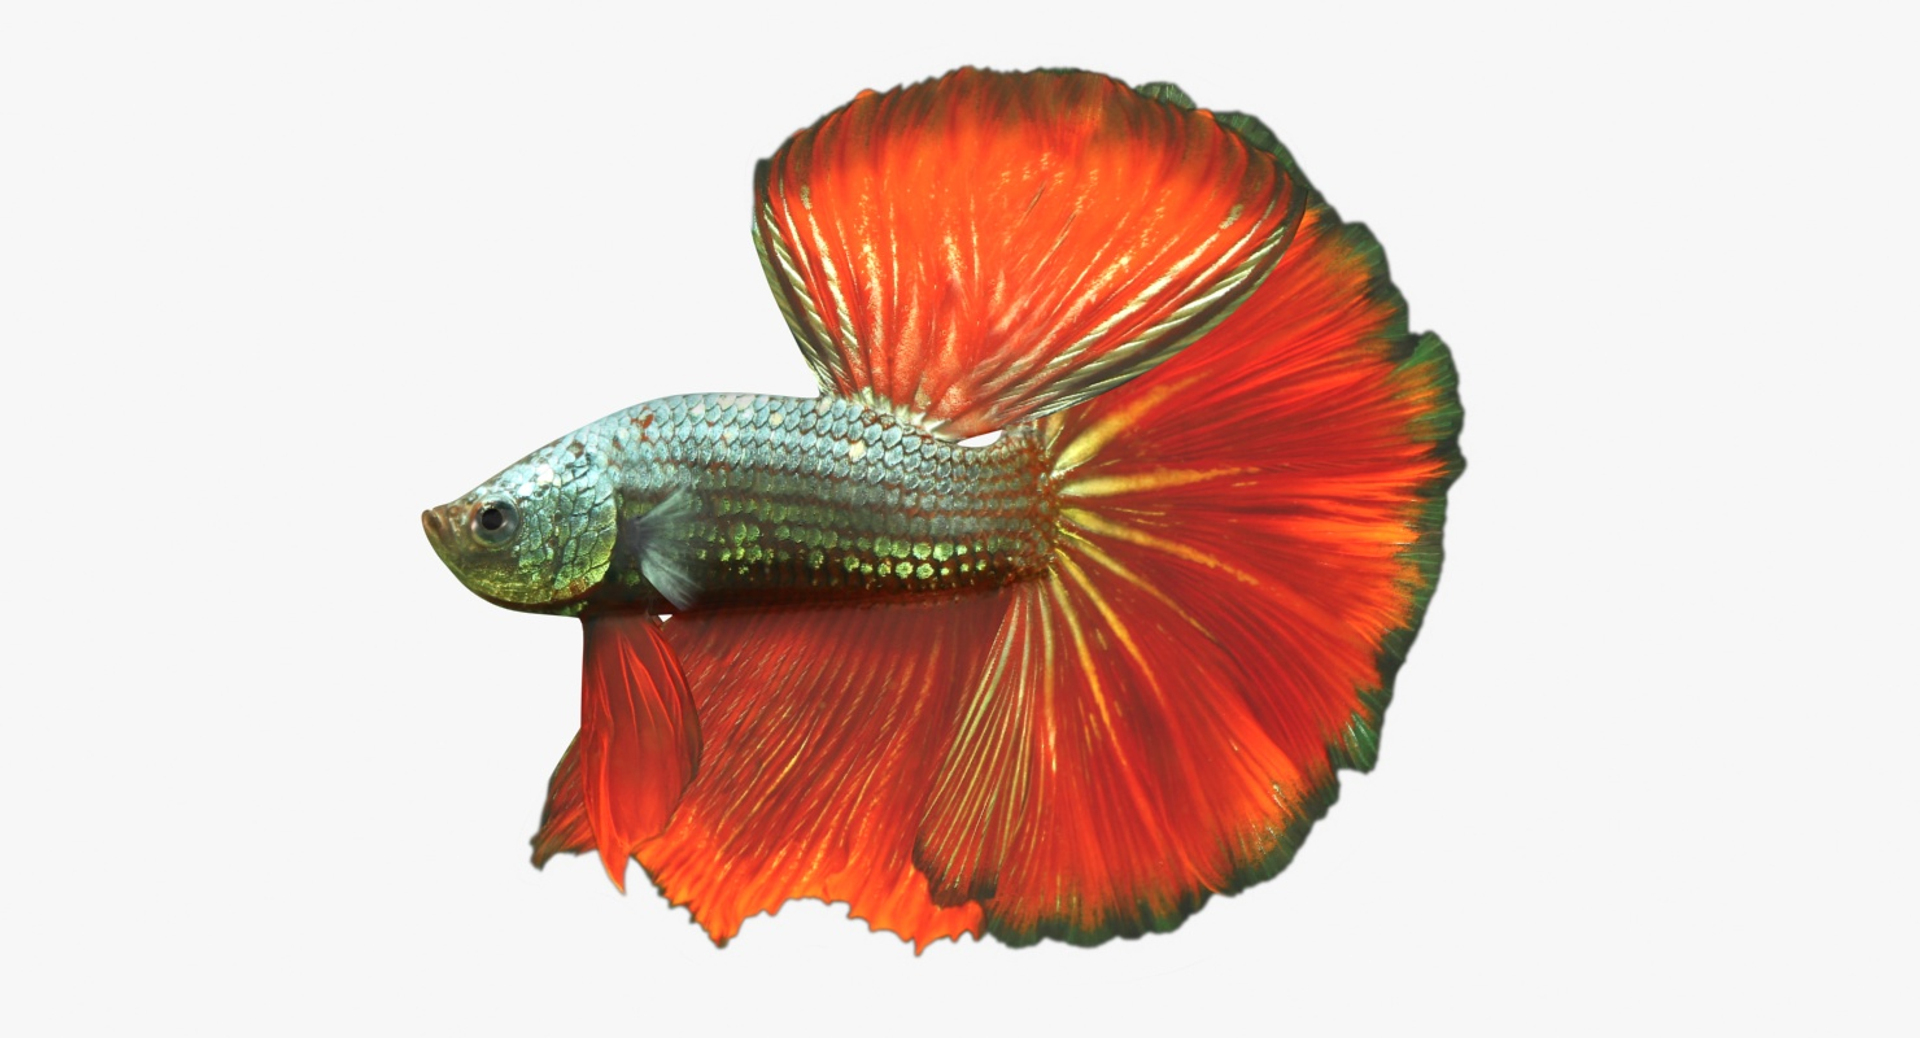 orange male betta fish